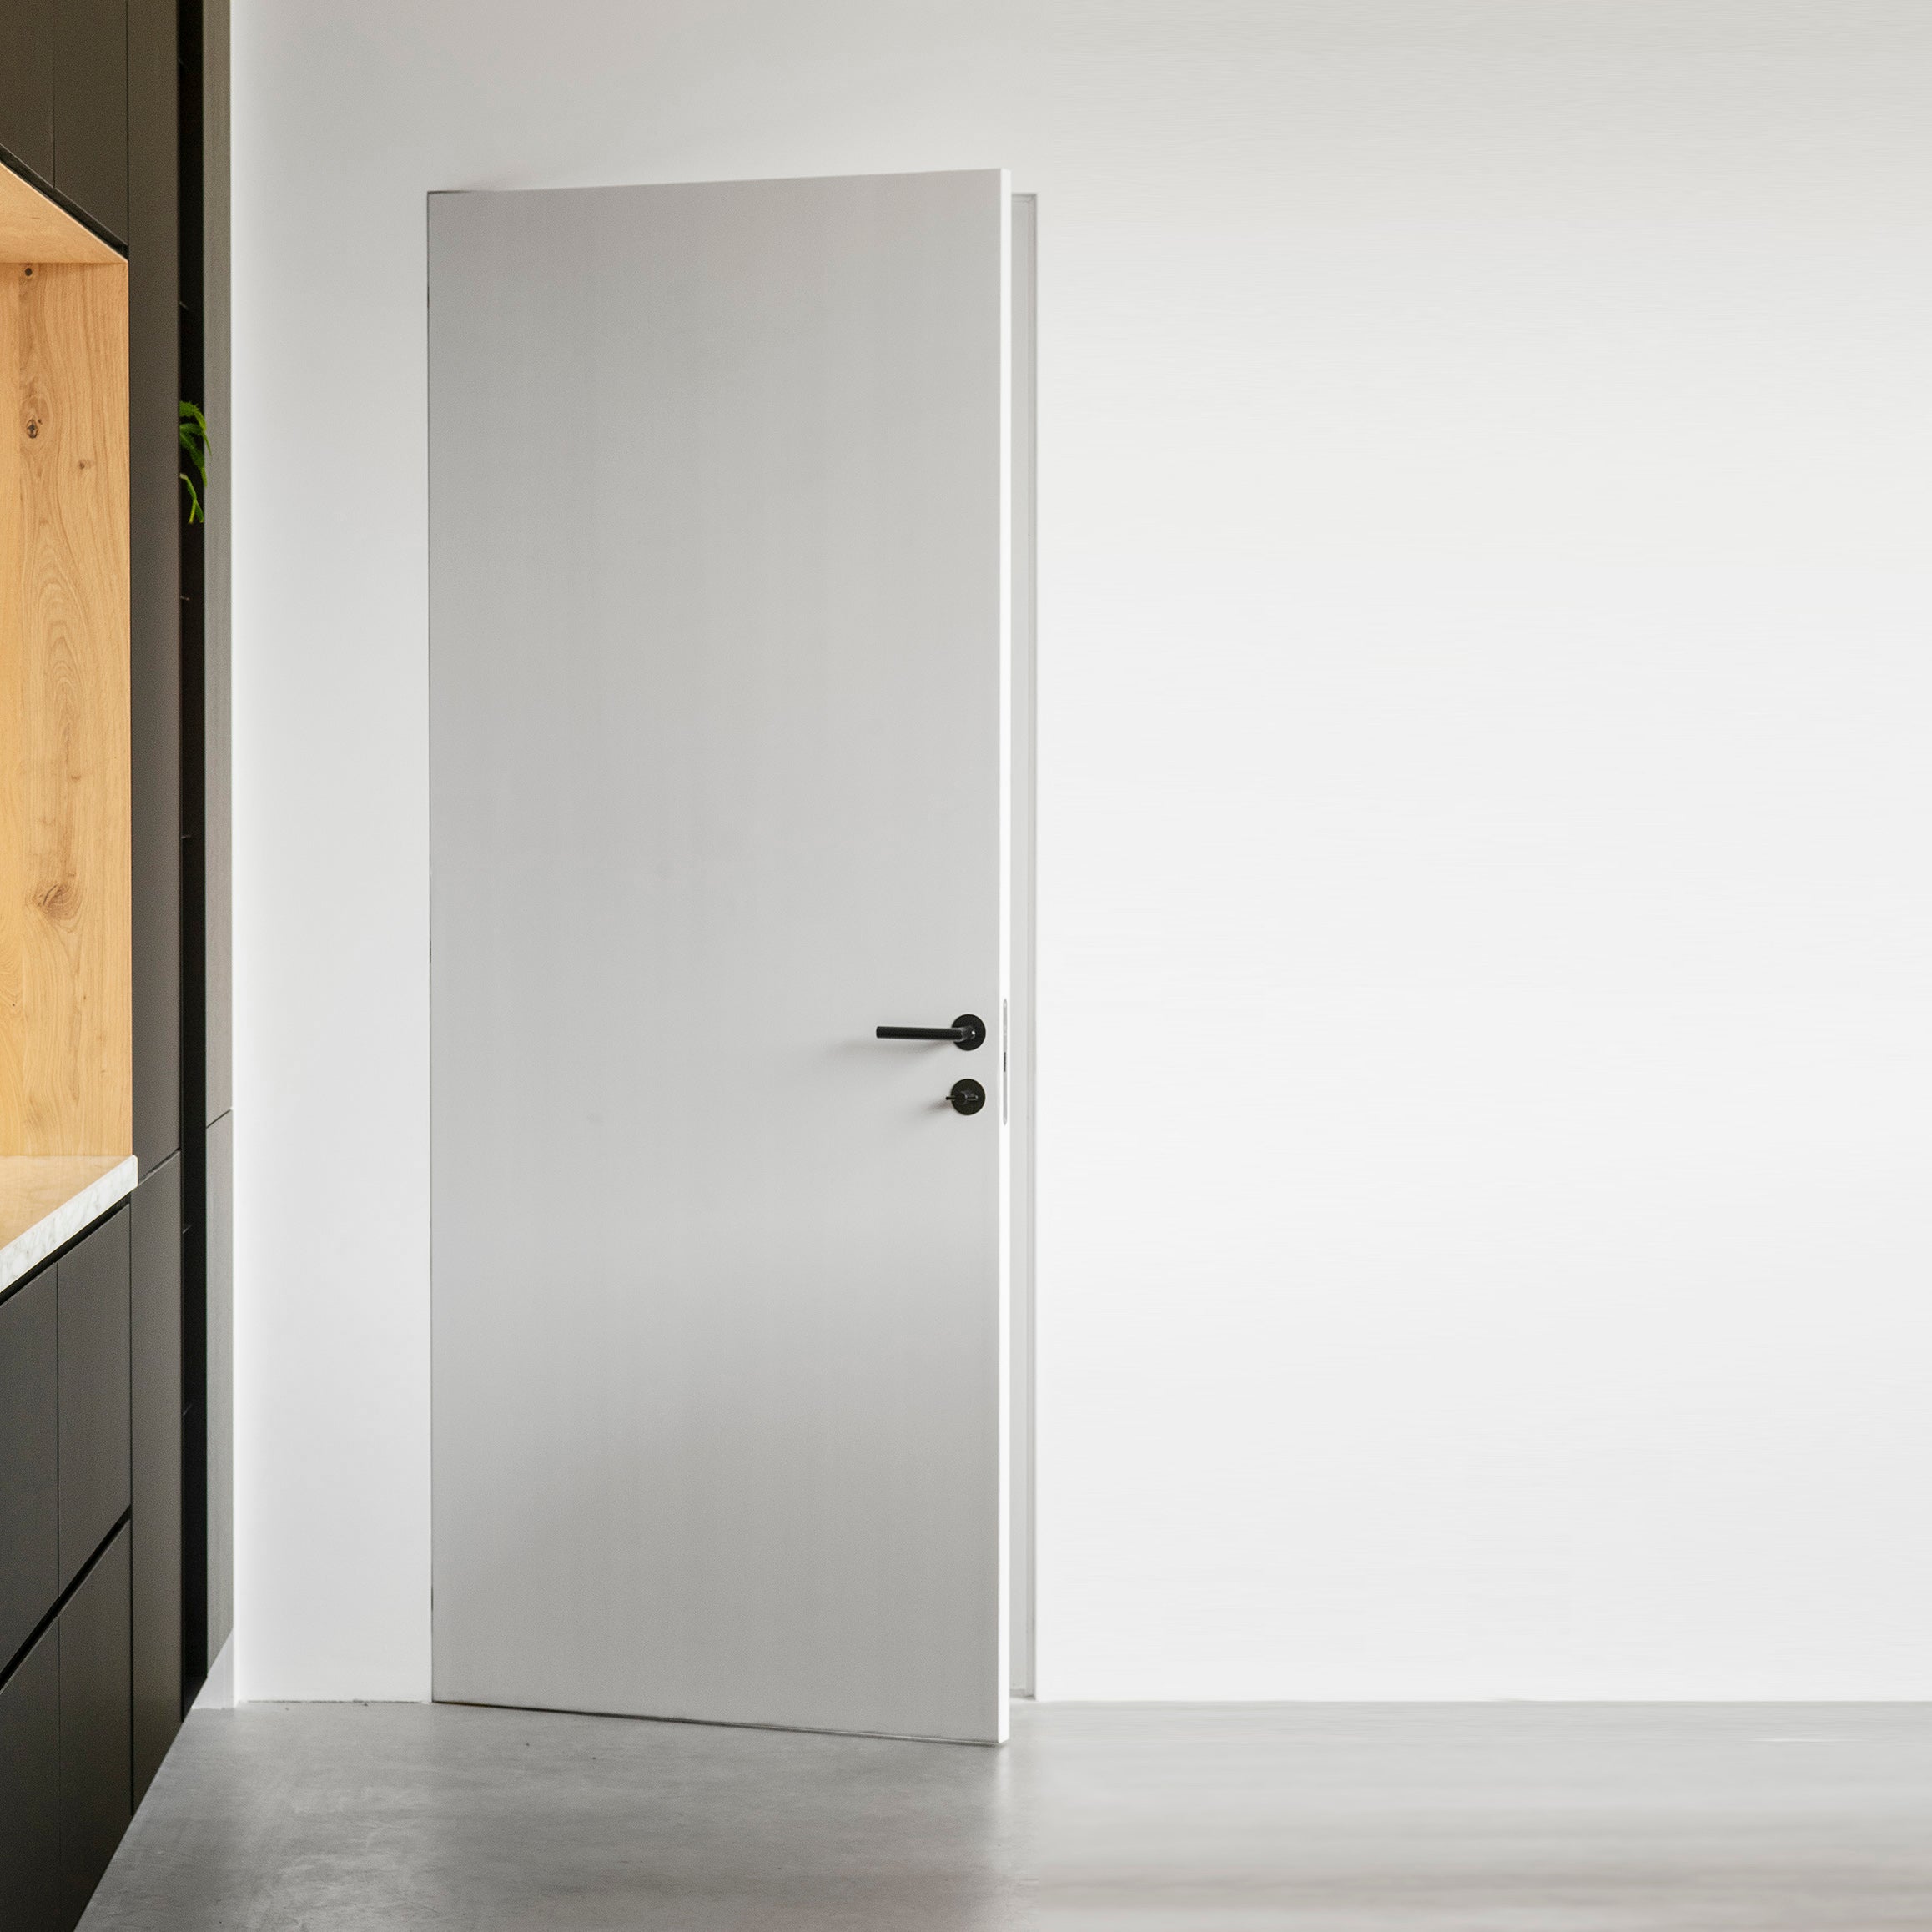 ik ben trots voldoende hoek Houtmerk - Maatwerk deur met onzichtbaar kozijn - Overschilderbaar Wit